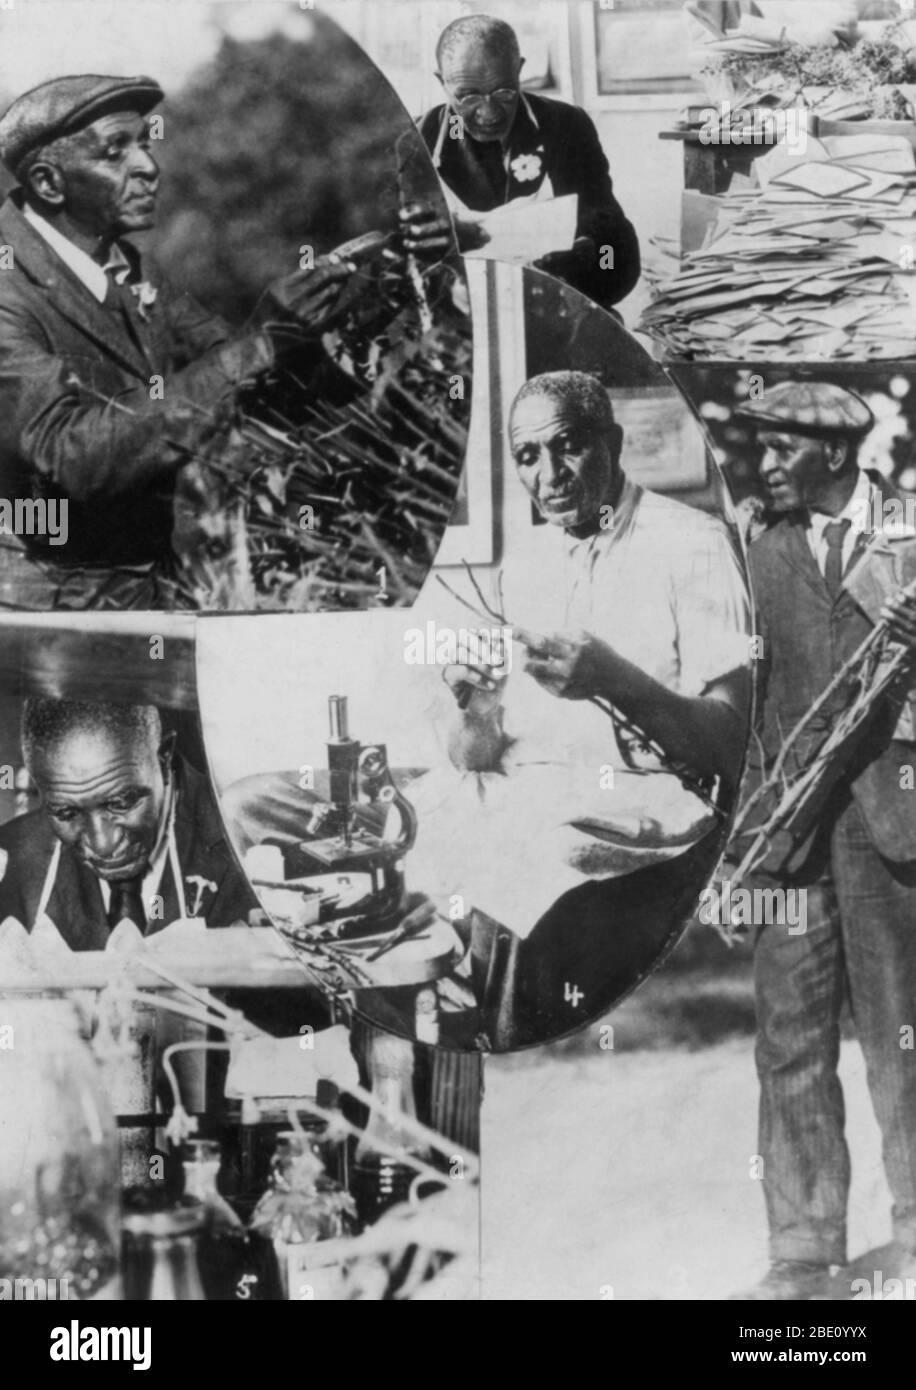 George Washington Carver (1864 - 5 janvier 1943) est un botaniste, chercheur, enseignant, et inventeur né dans l'esclavage. En 1891, il a assisté et a étudié la botanique à l'Iowa State Agricultural College où il a été le premier étudiant noir, et plus tard enseigné comme le premier noir membre du corps enseignant. Sa réputation est basée sur ses recherches sur et la promotion de cultures de substitution au coton, comme l'arachide, le soja et les patates douces, qui a également contribué à la nutrition pour les familles agricoles. Il voulait que les agriculteurs pauvres à cultiver des cultures de substitution à la fois comme source de leur propre nourriture et comme une source d'autres produits Banque D'Images